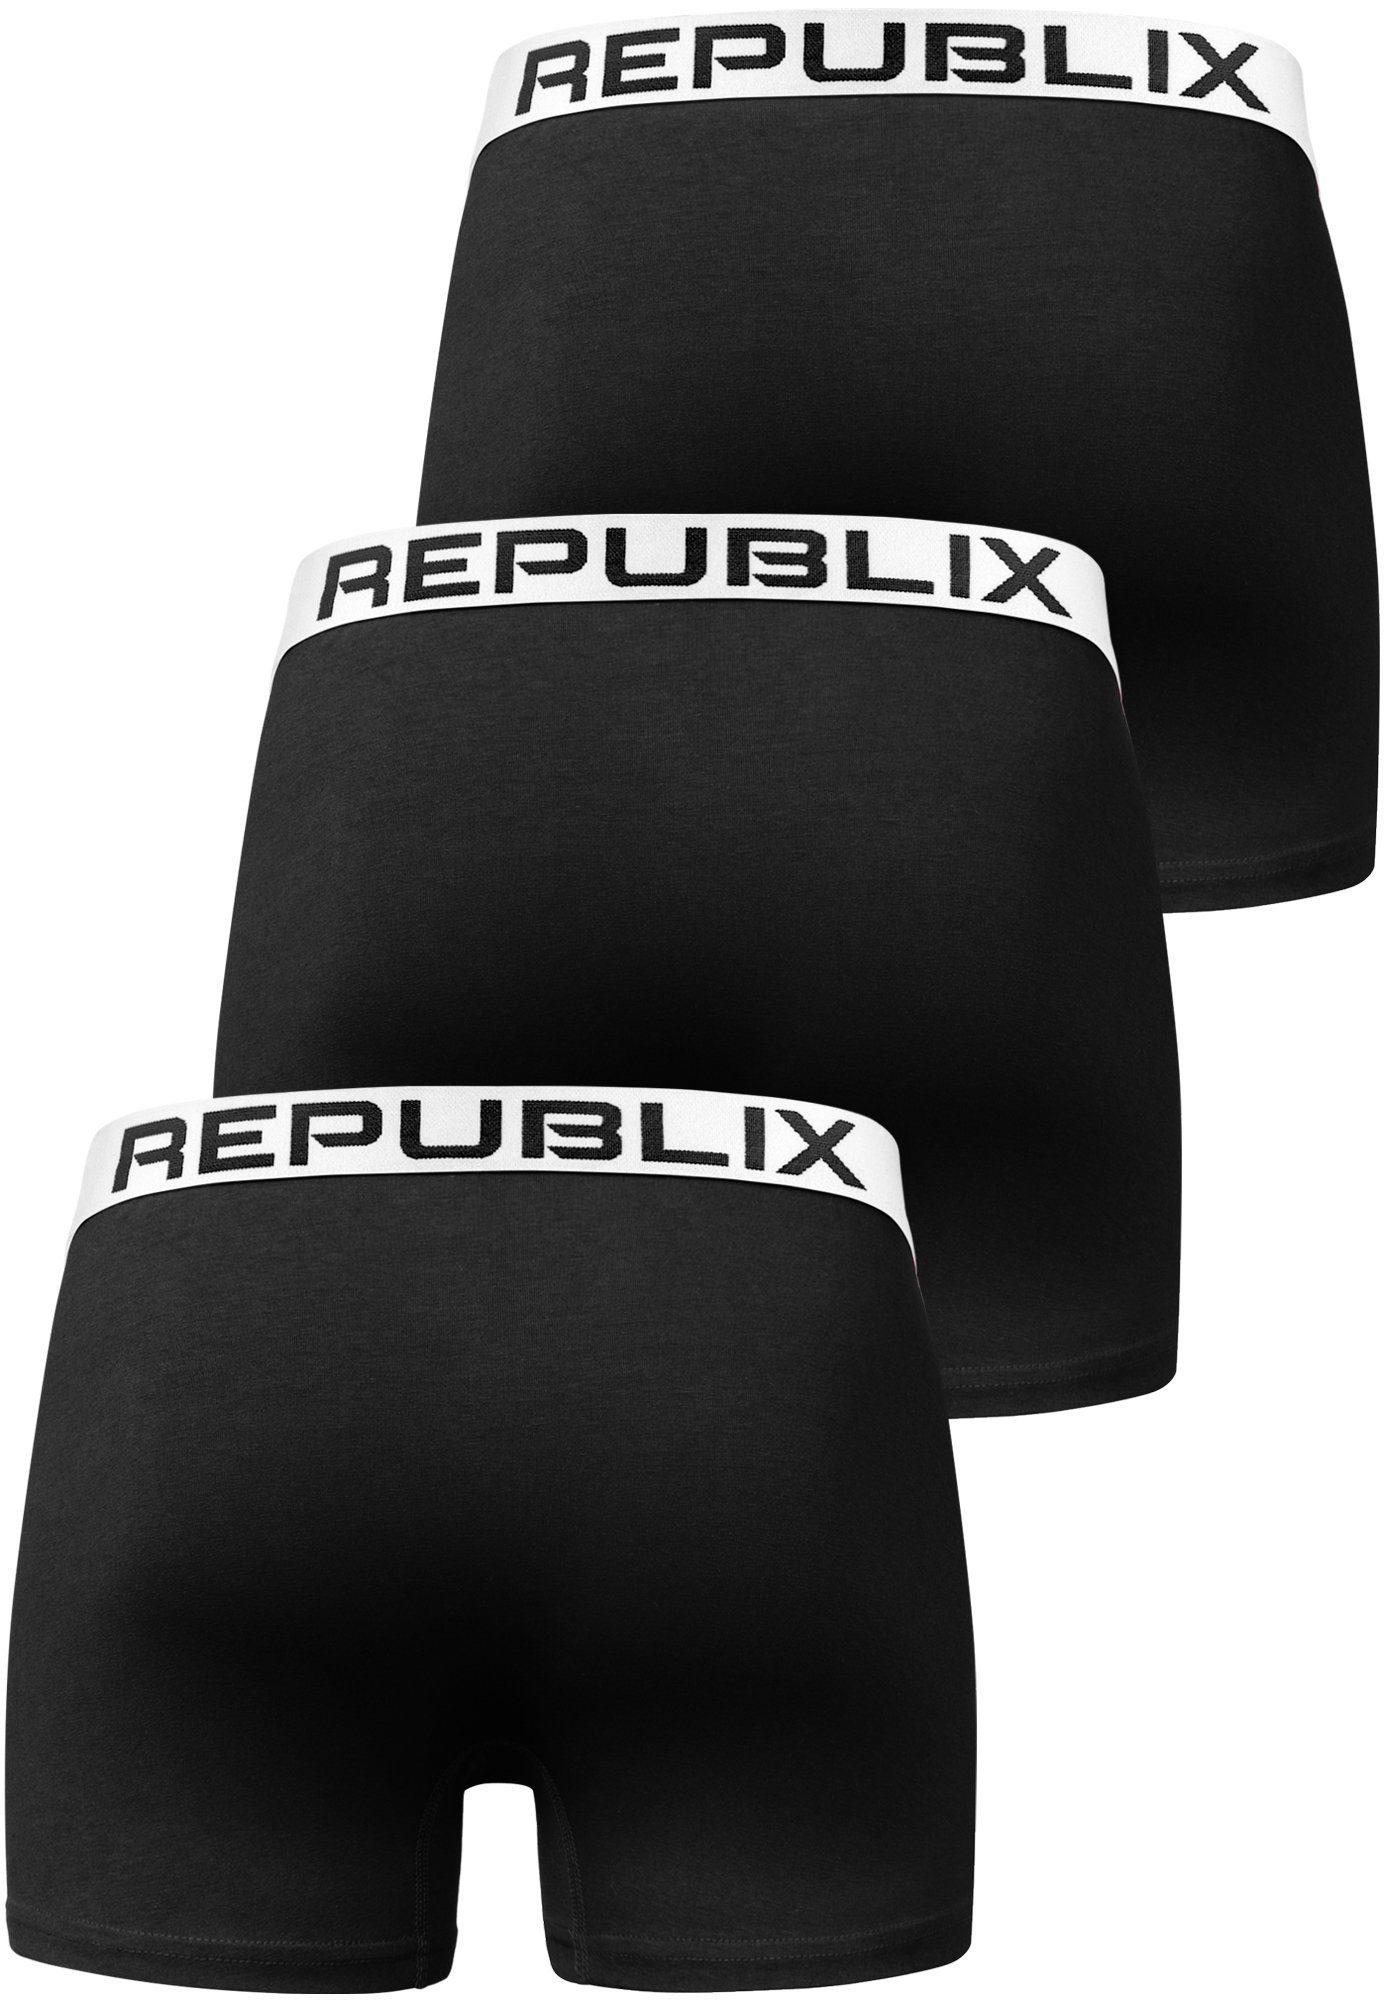 (3er-Pack) Schwarz/Weiß Boxershorts DON Männer Baumwolle Herren Unterhose REPUBLIX Unterwäsche